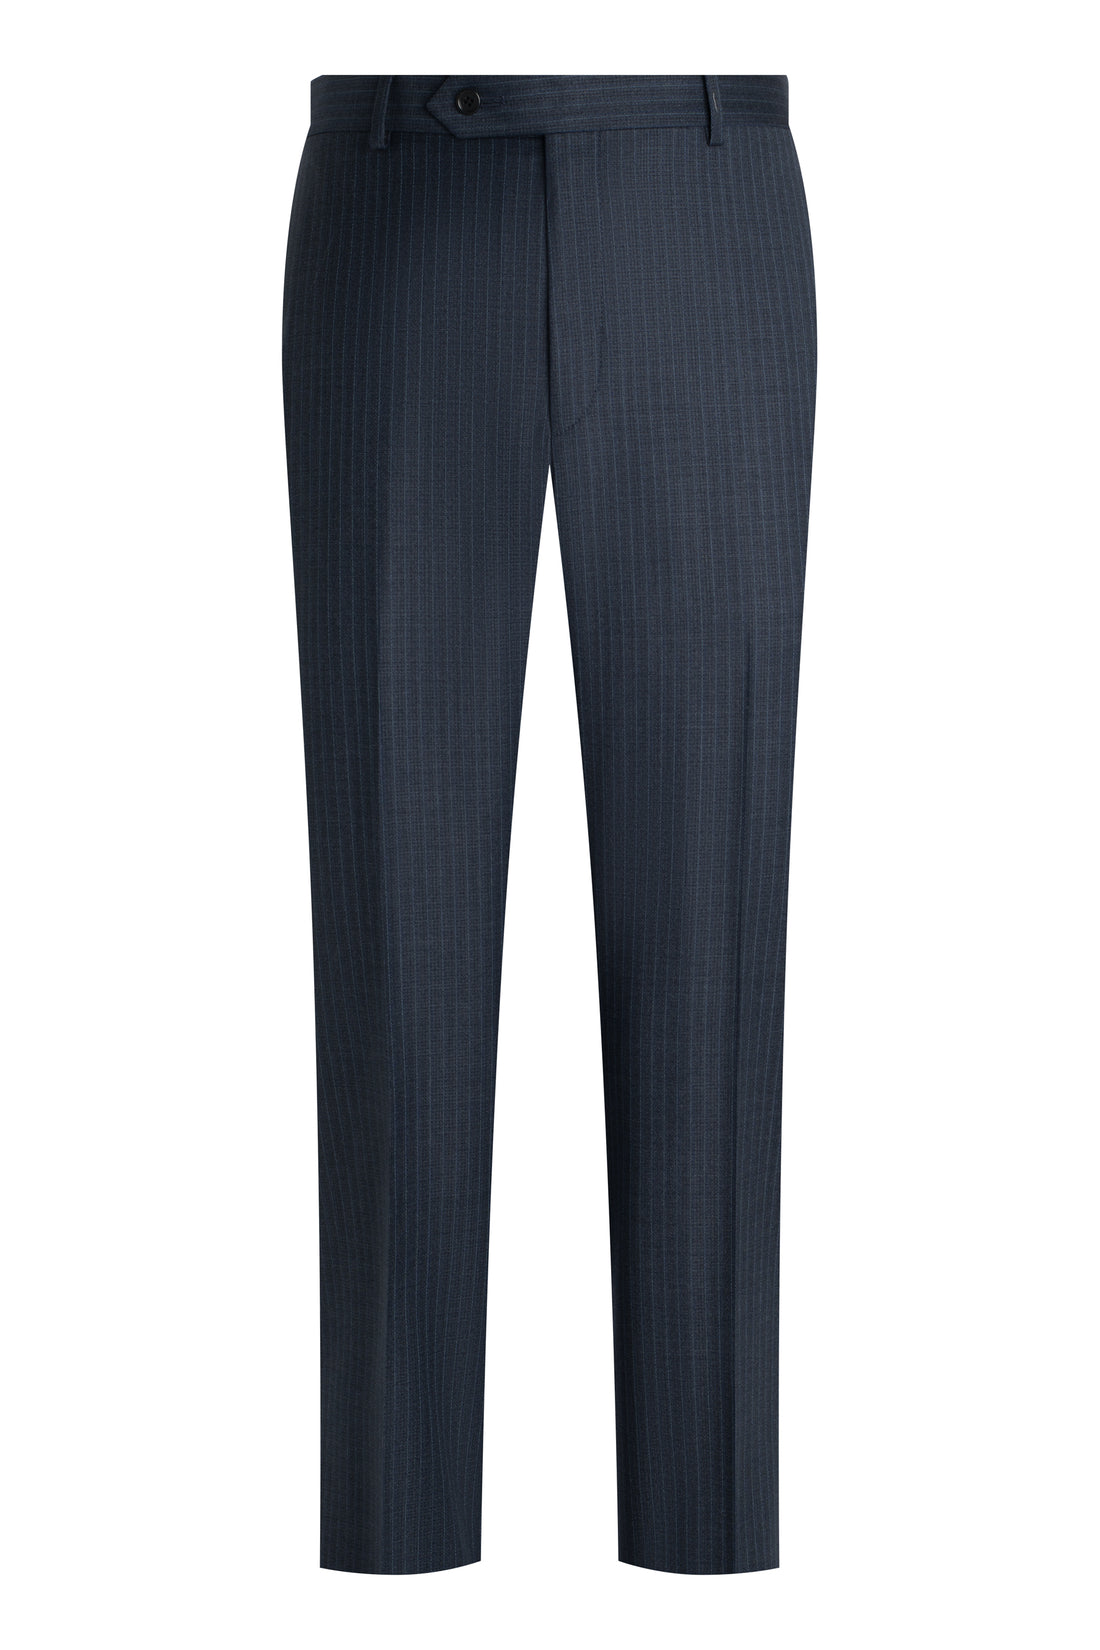 Slate Blue Zelander Stripe Suit front pant